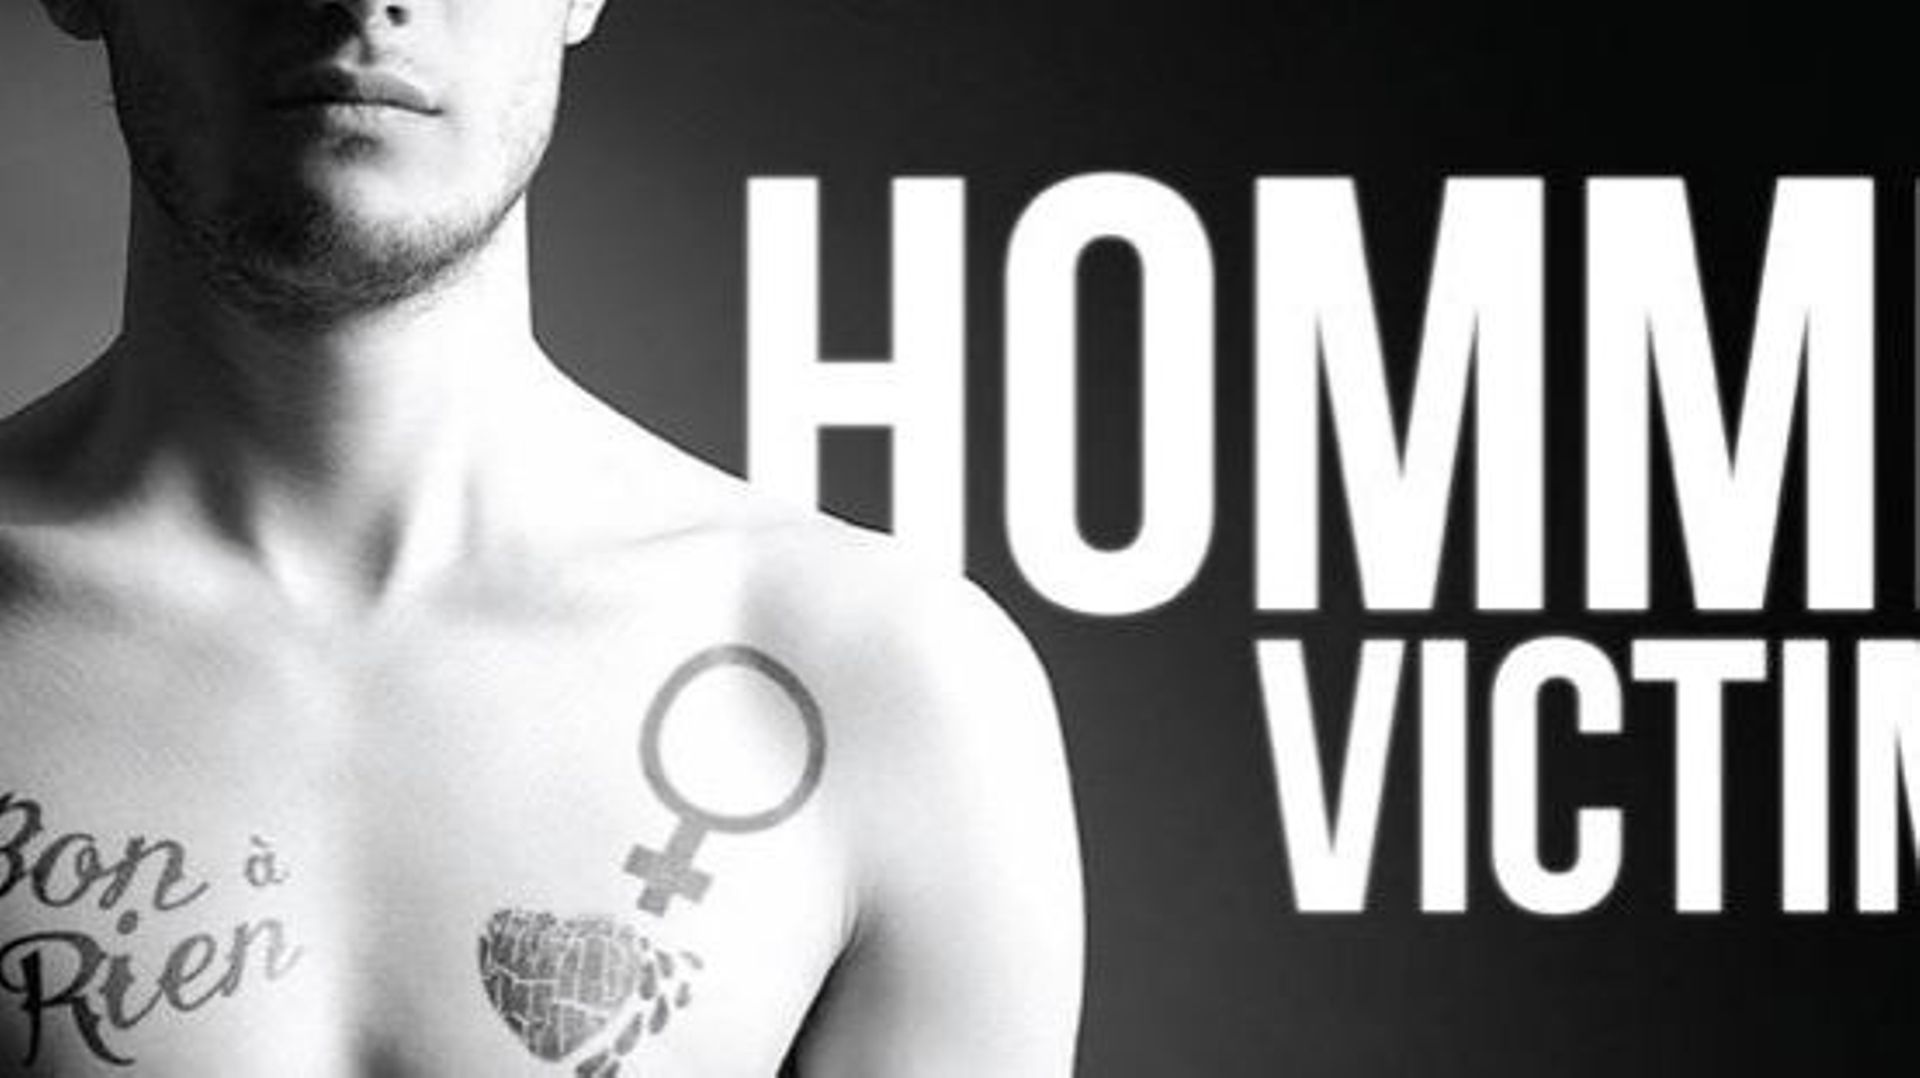 Affiche de la campagne pour sensibiliser aux hommes victimes de violence conjugale
Province de Liège, département des affaires sociales